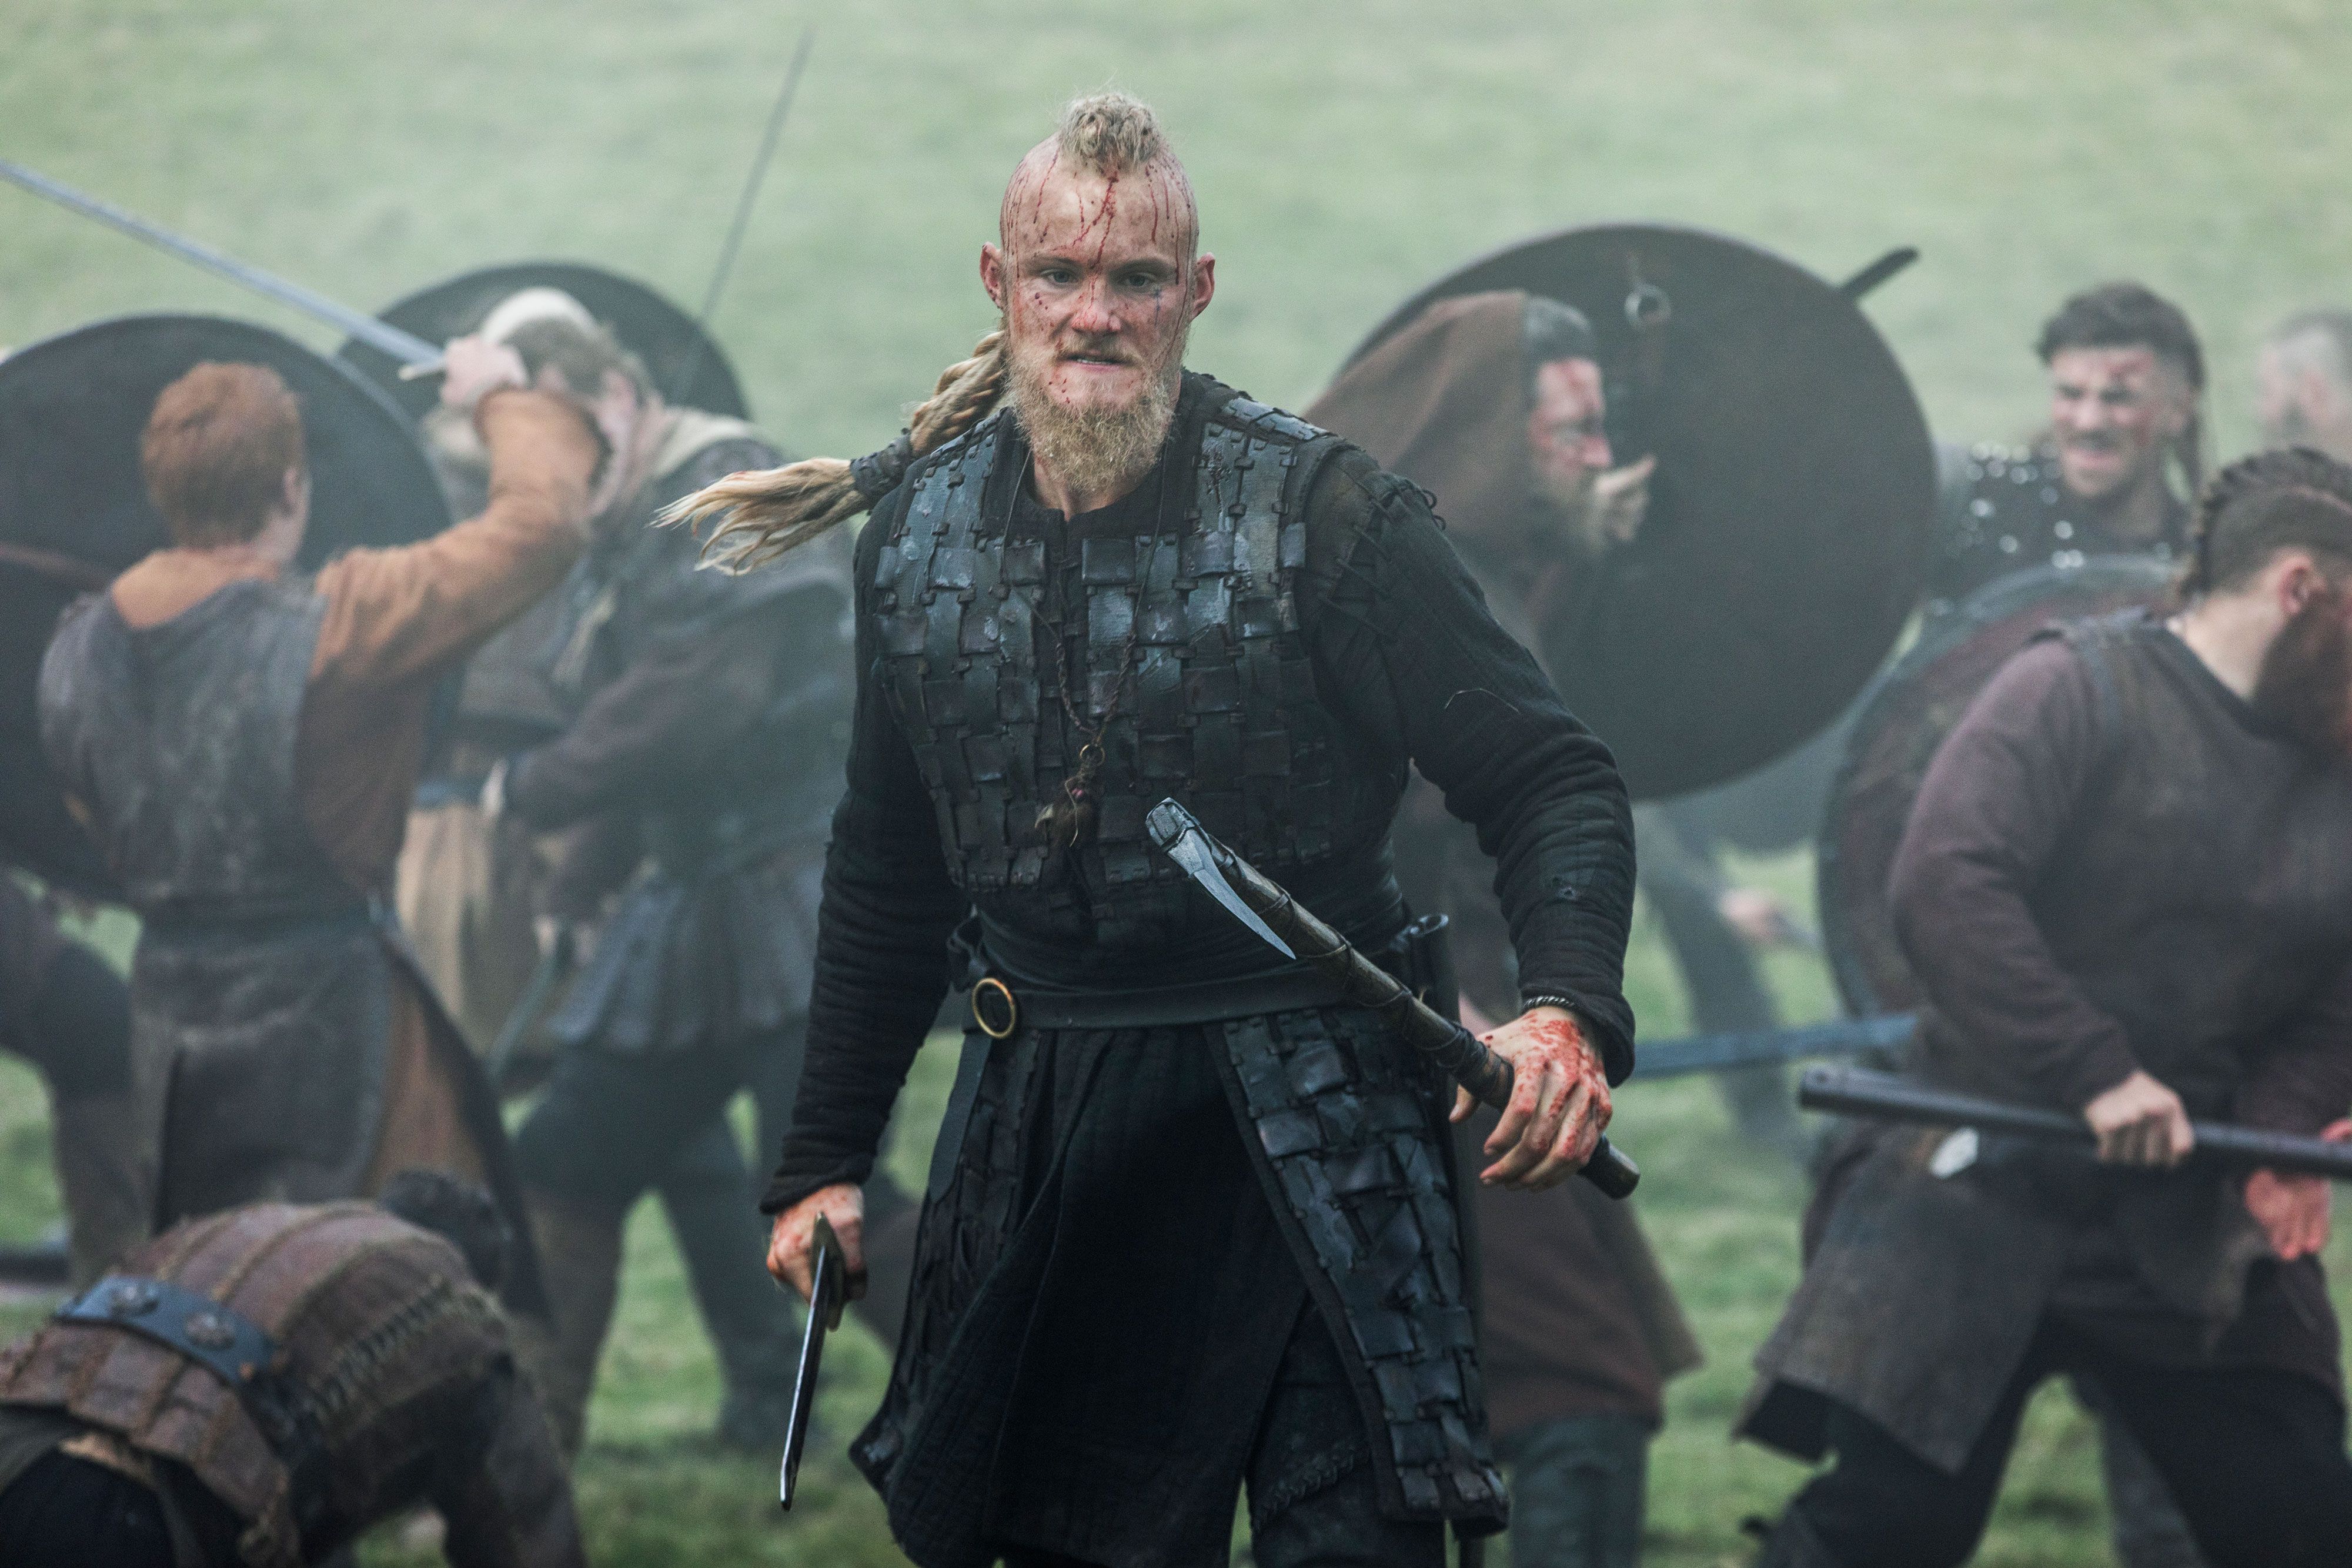 Vikings  Os 10 momentos mais marcantes de Ragnar Lothbrok - Aficionados